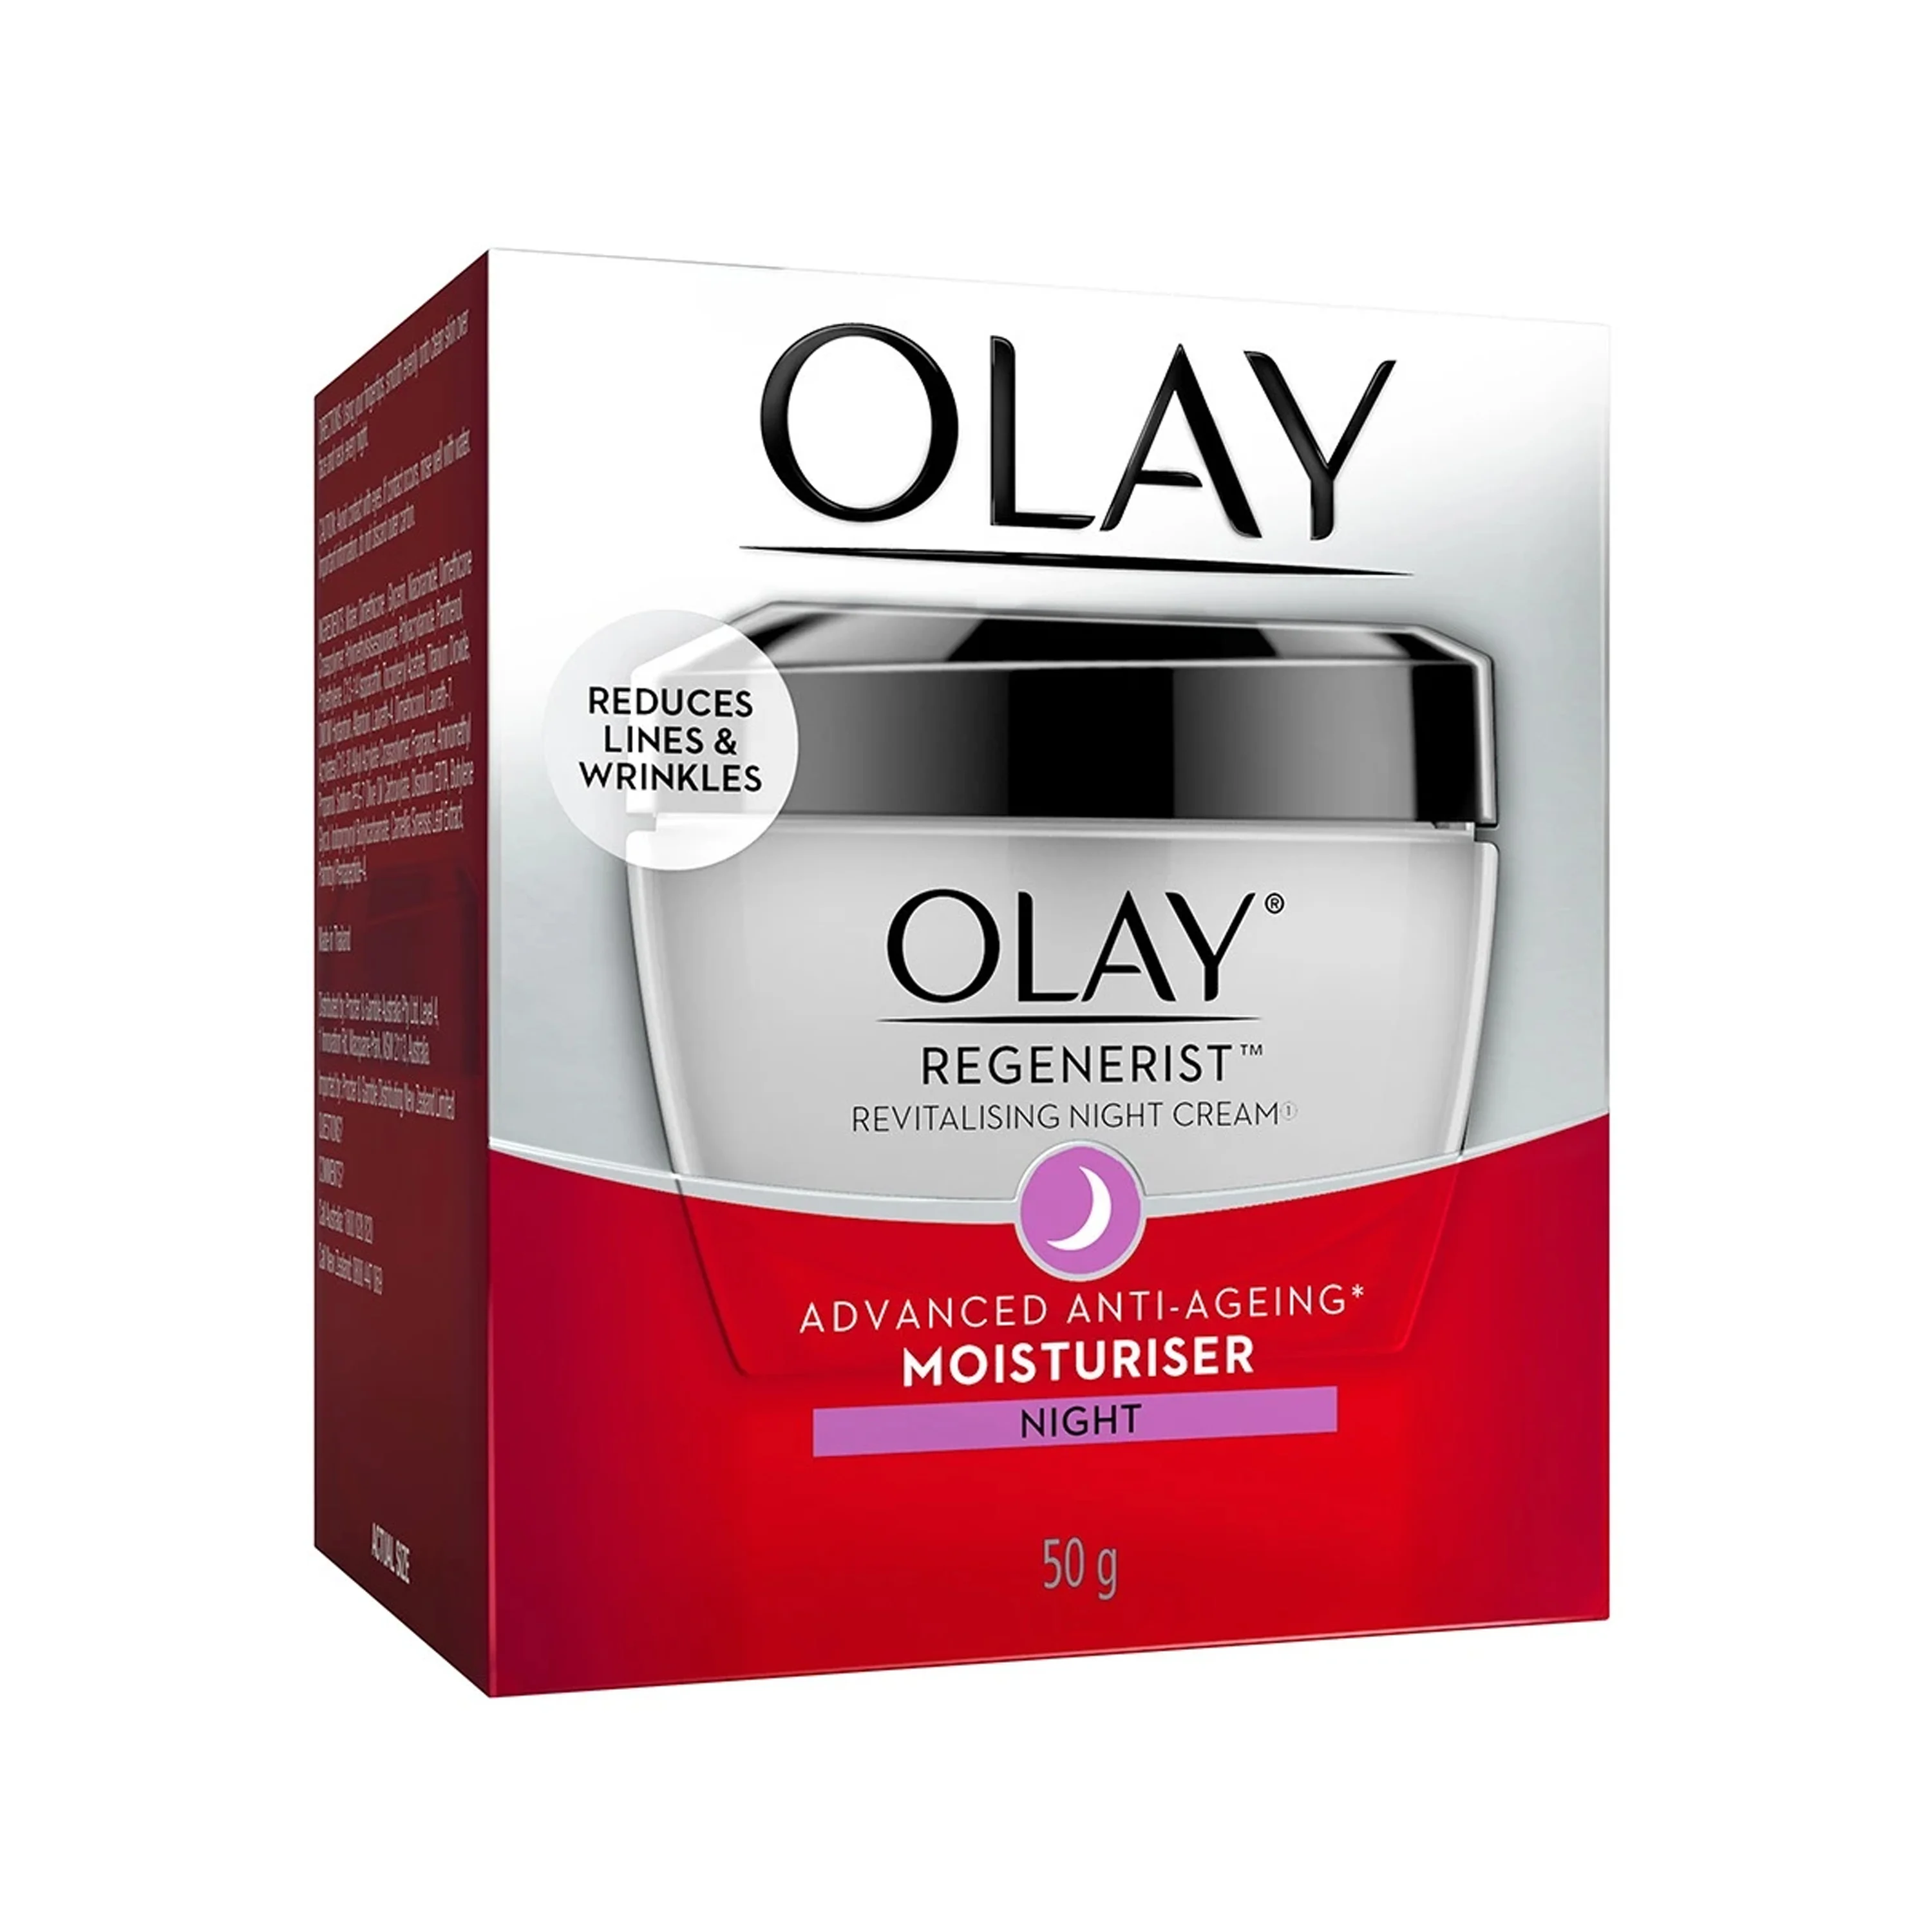 Olay Regenerist Revitalizing Night Cream